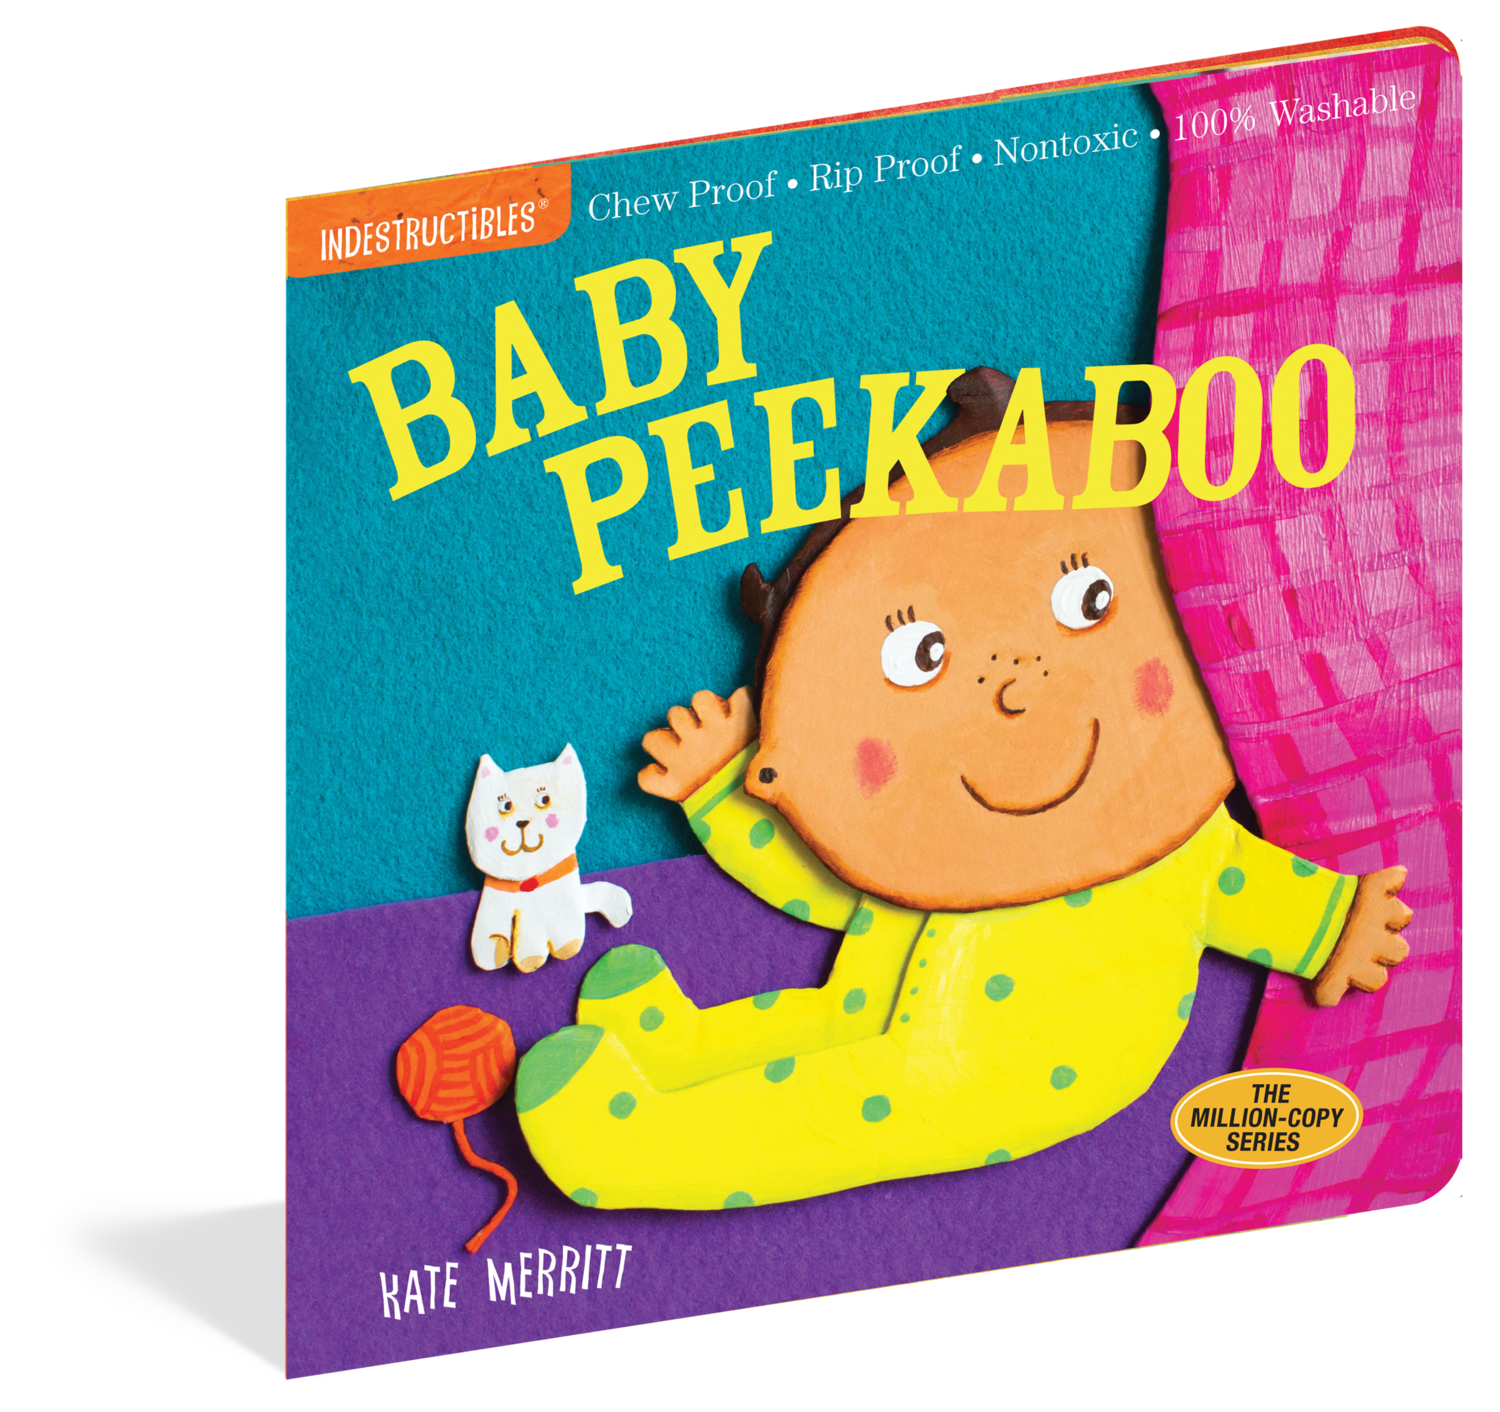 INDESTRUCTIBLES- Baby Peekaboo